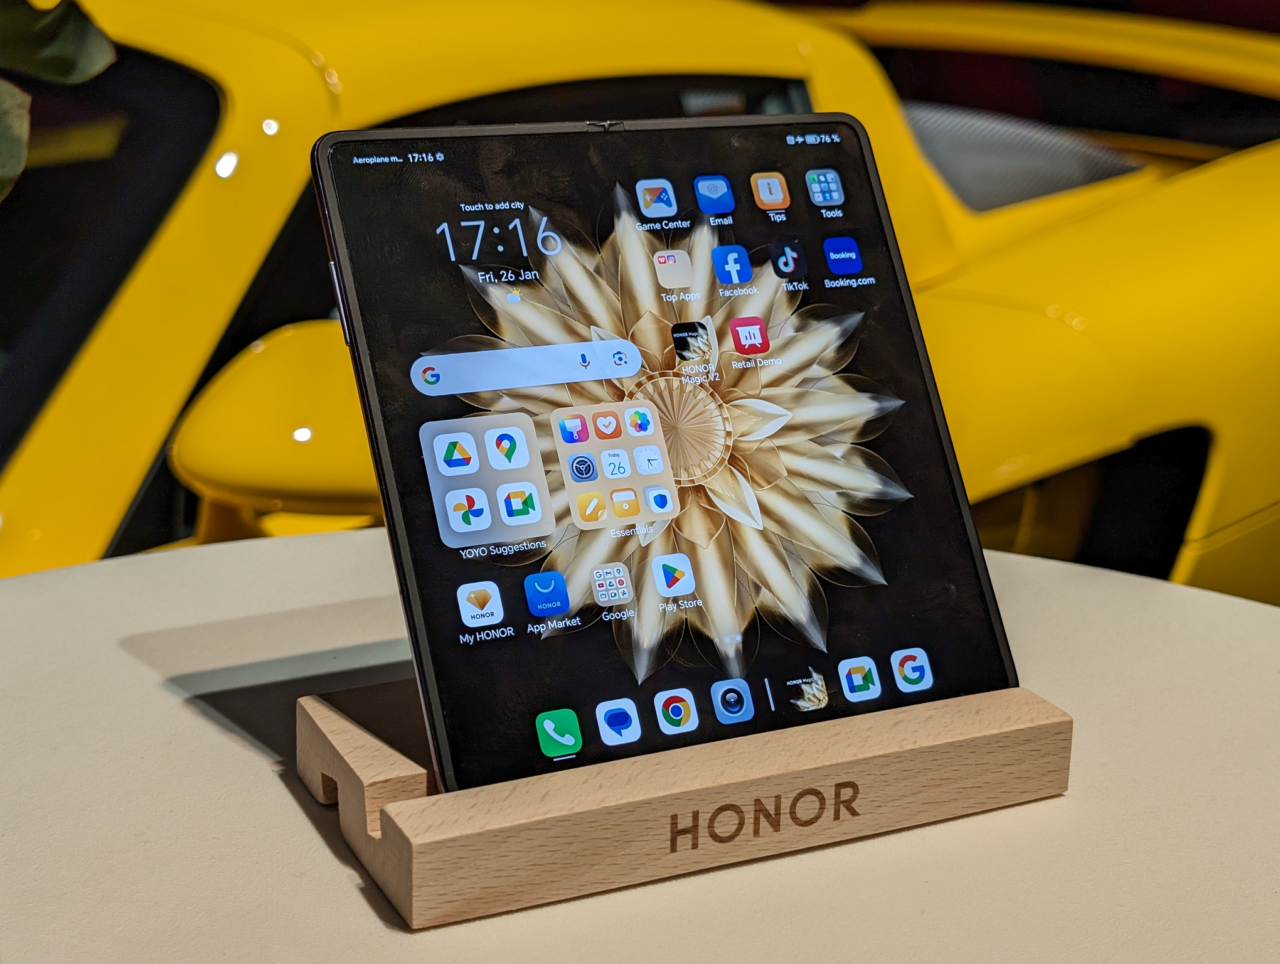 Tablet marki Honor ustawiony na drewnianym stojaku z wyświetlonym ekranem głównym, w tle żółty samochód.